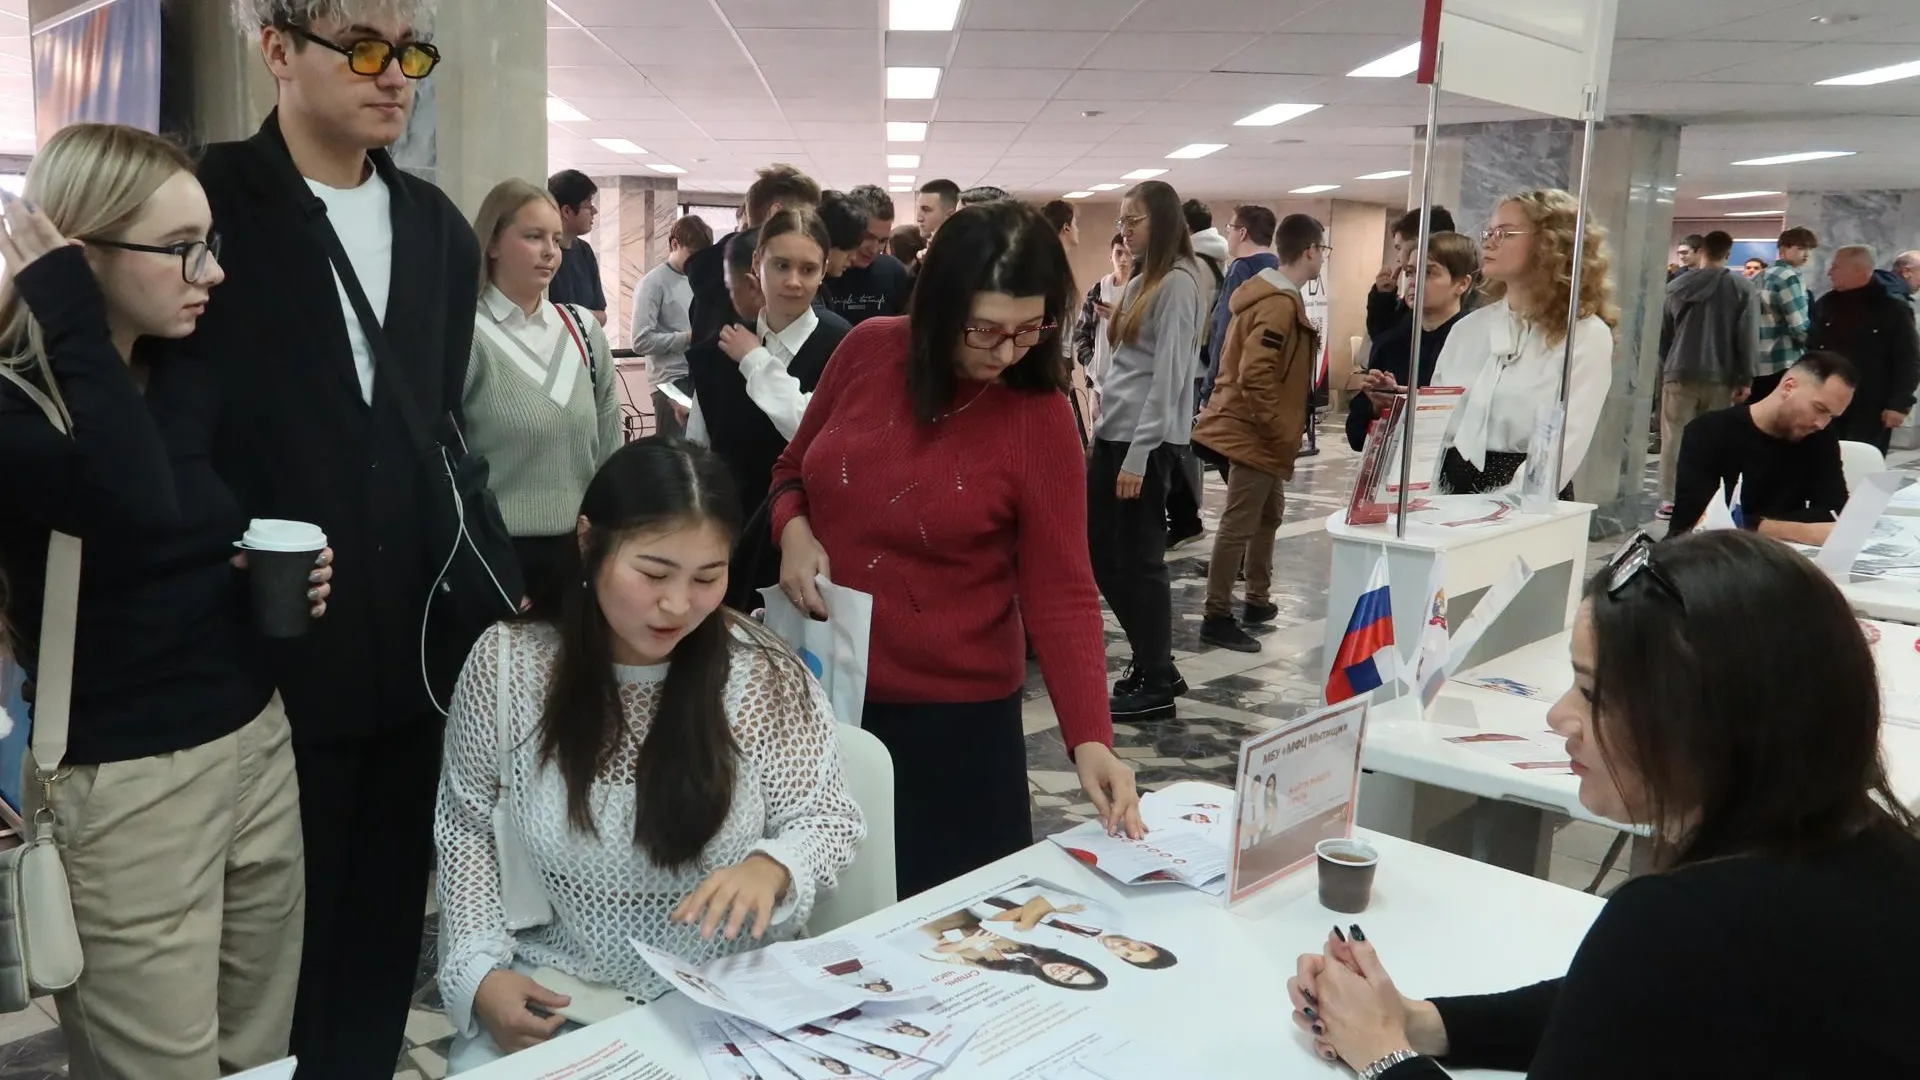 МФЦ городского округа Мытищи принял участие в ярмарке вакансий